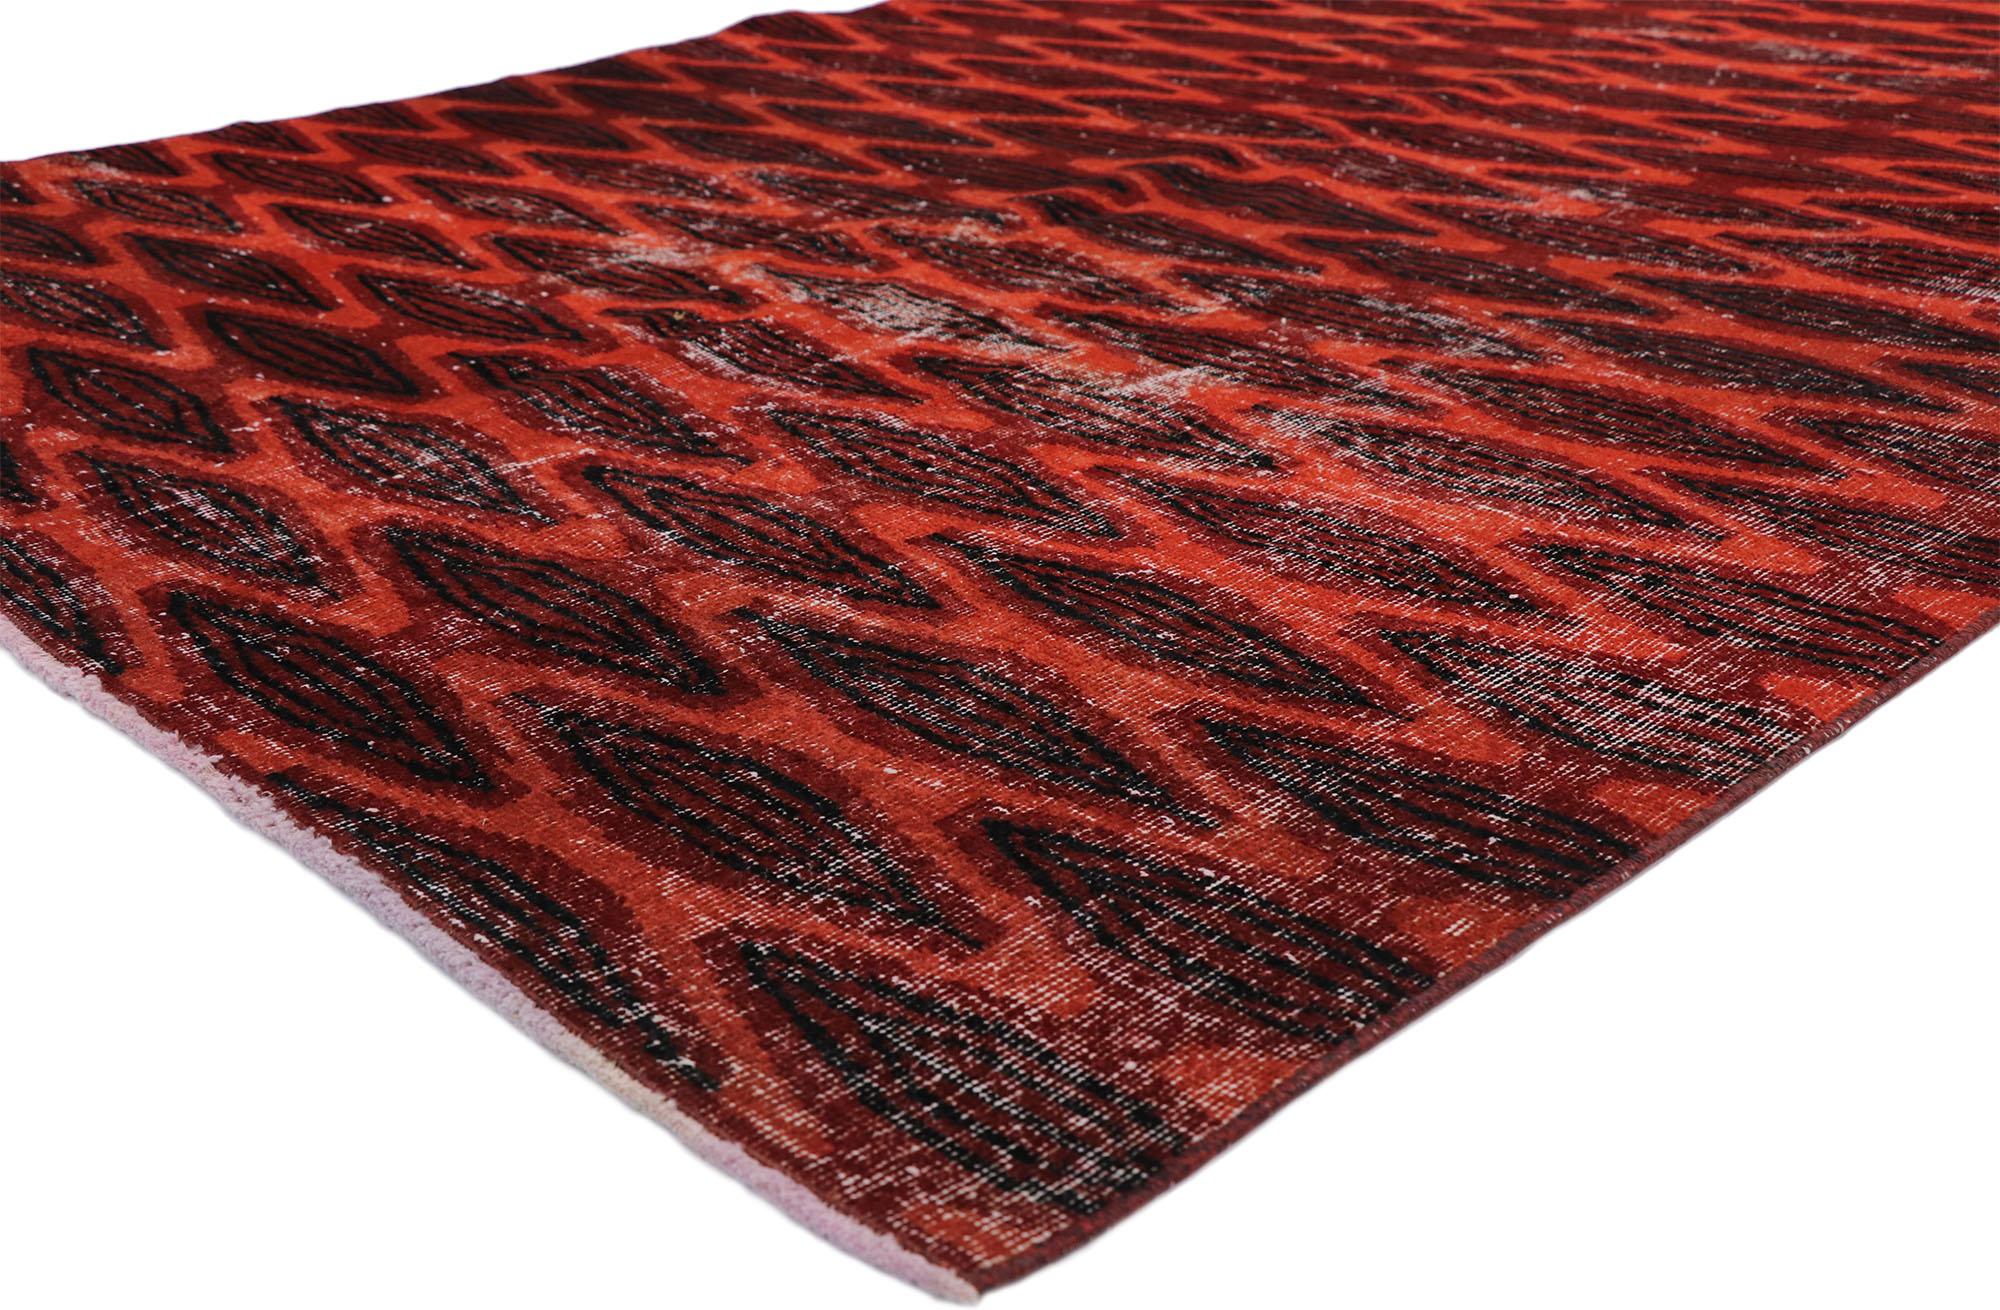 52589, Zeki Muren strapazierter türkischer Sivas-Teppich im elisabethanischen Art-Déco-Stil. Dieser handgeknüpfte türkische Sivas-Teppich aus Wolle ist mit einem Rautengittermuster versehen, das sich über ein rotes Feld ausbreitet. Säulen aus